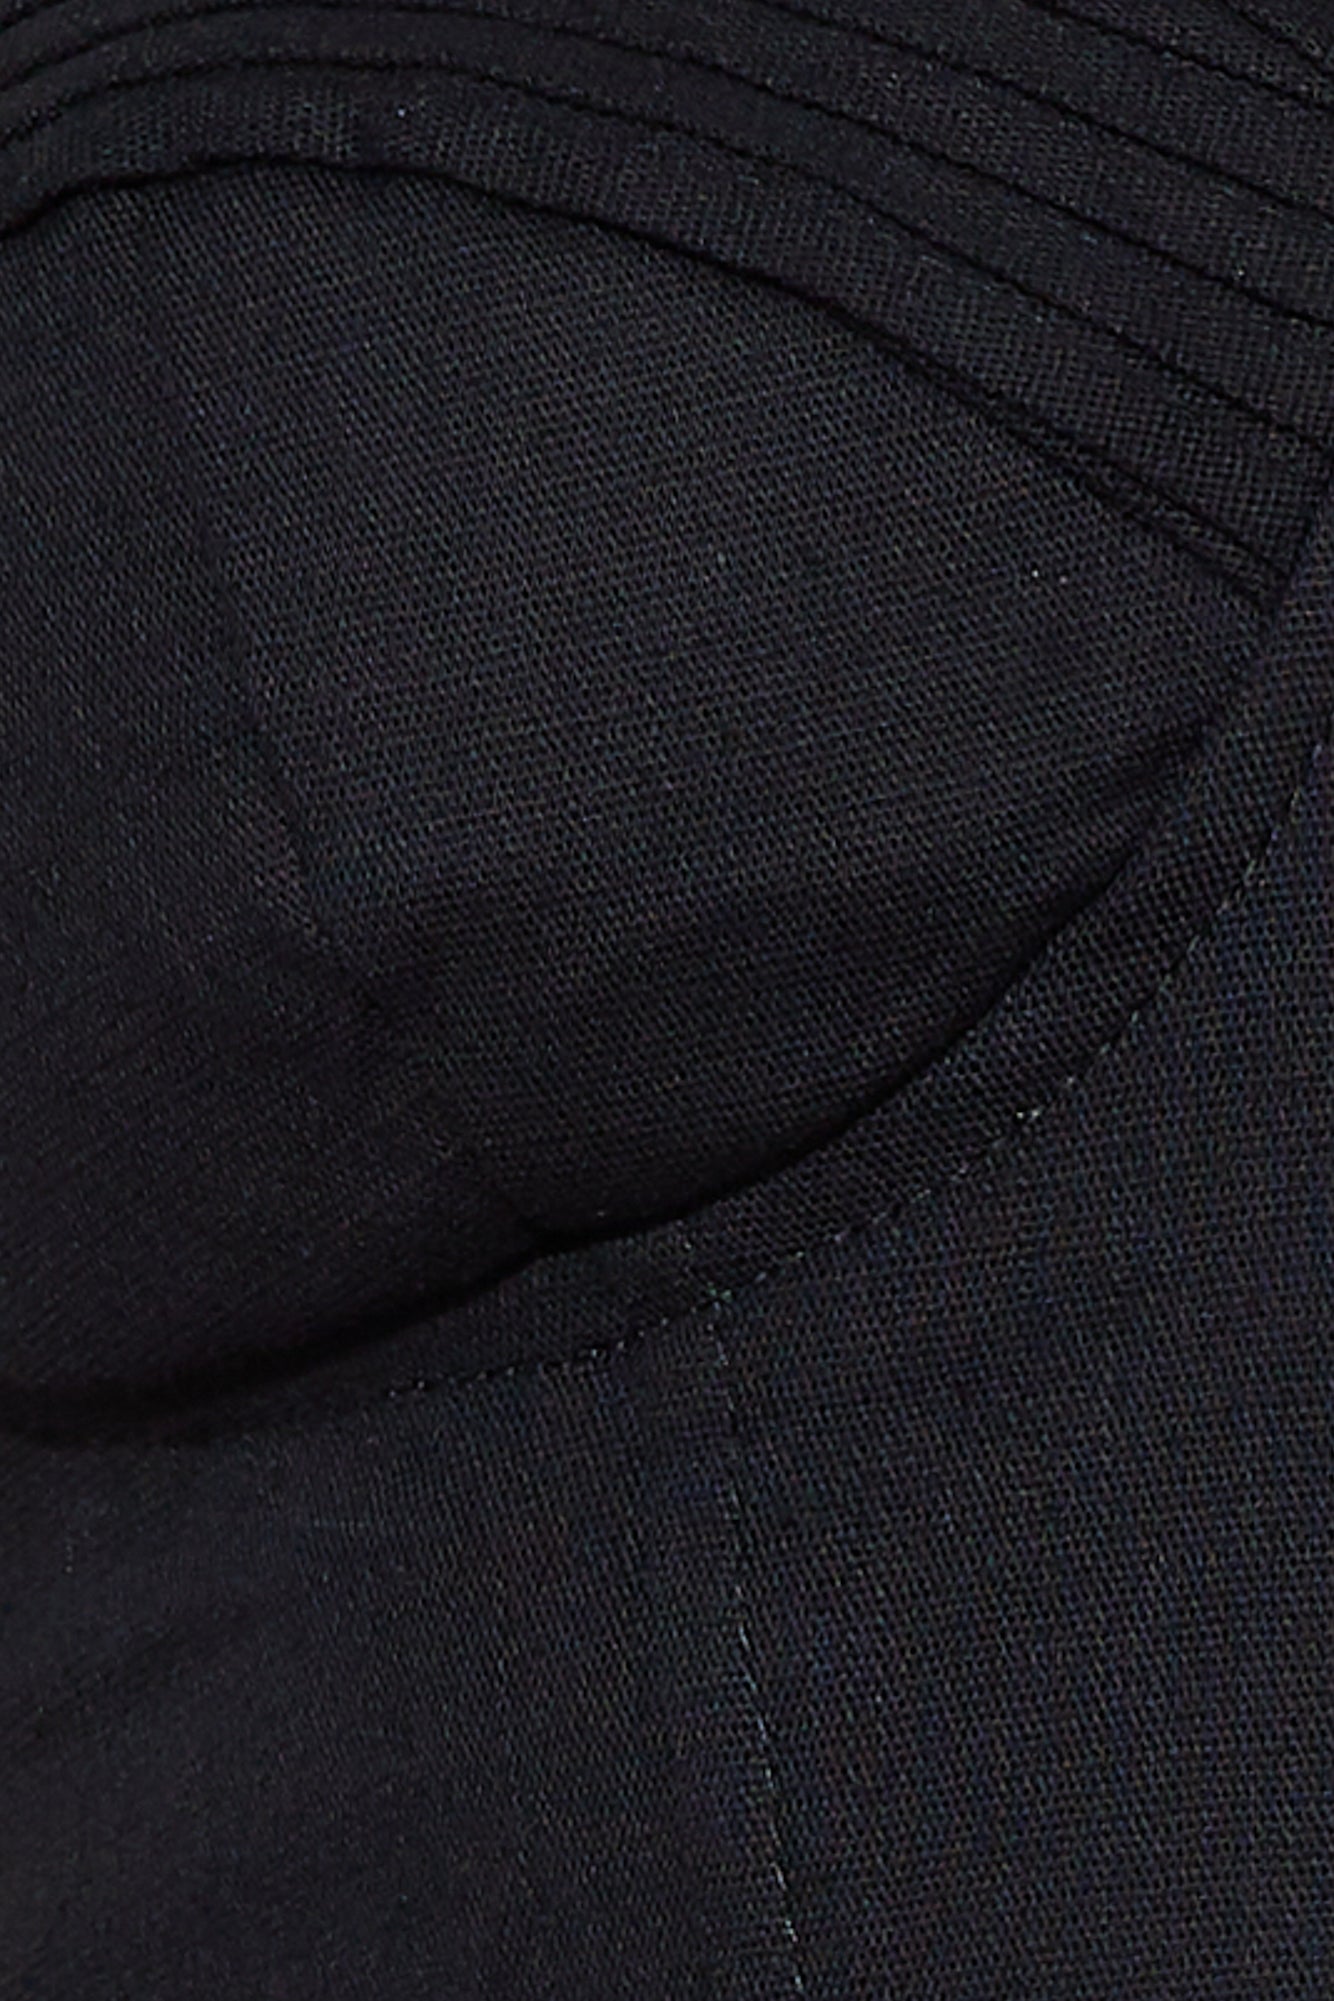 Filtered Pants Black